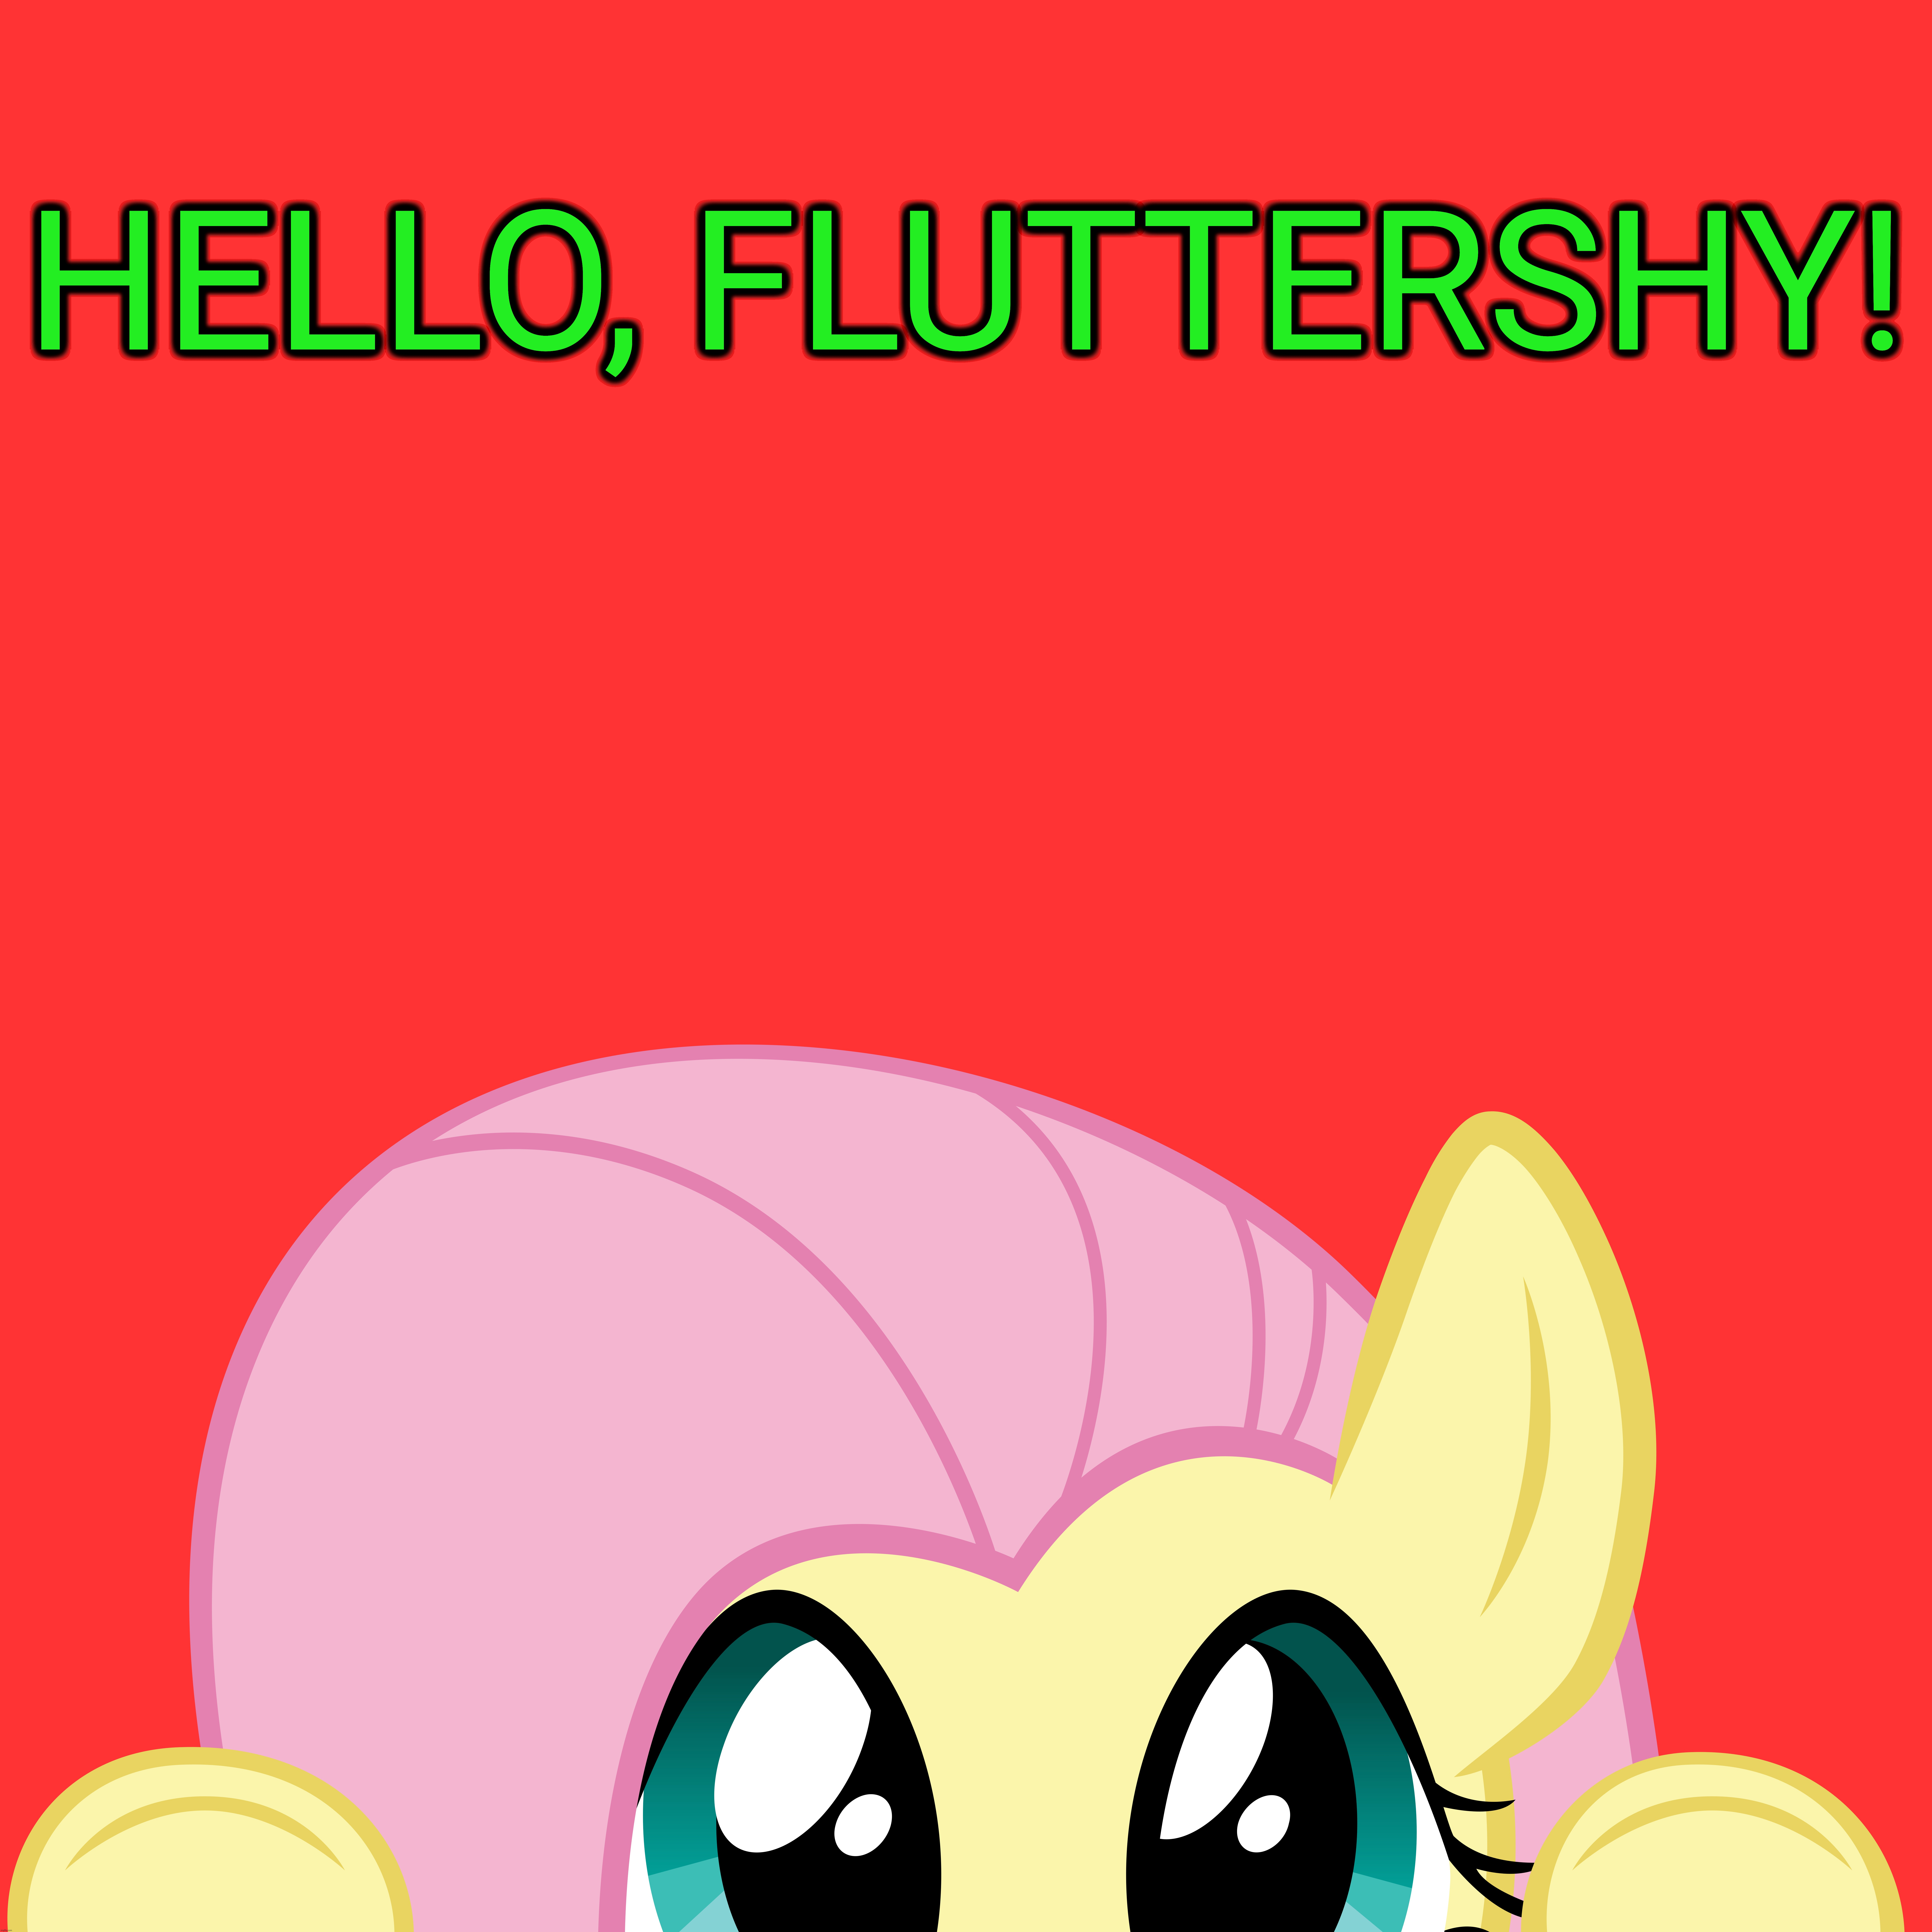 HELLO, FLUTTERSHY! | image tagged in fluttershy,peek-a-boo,cute | made w/ Imgflip meme maker